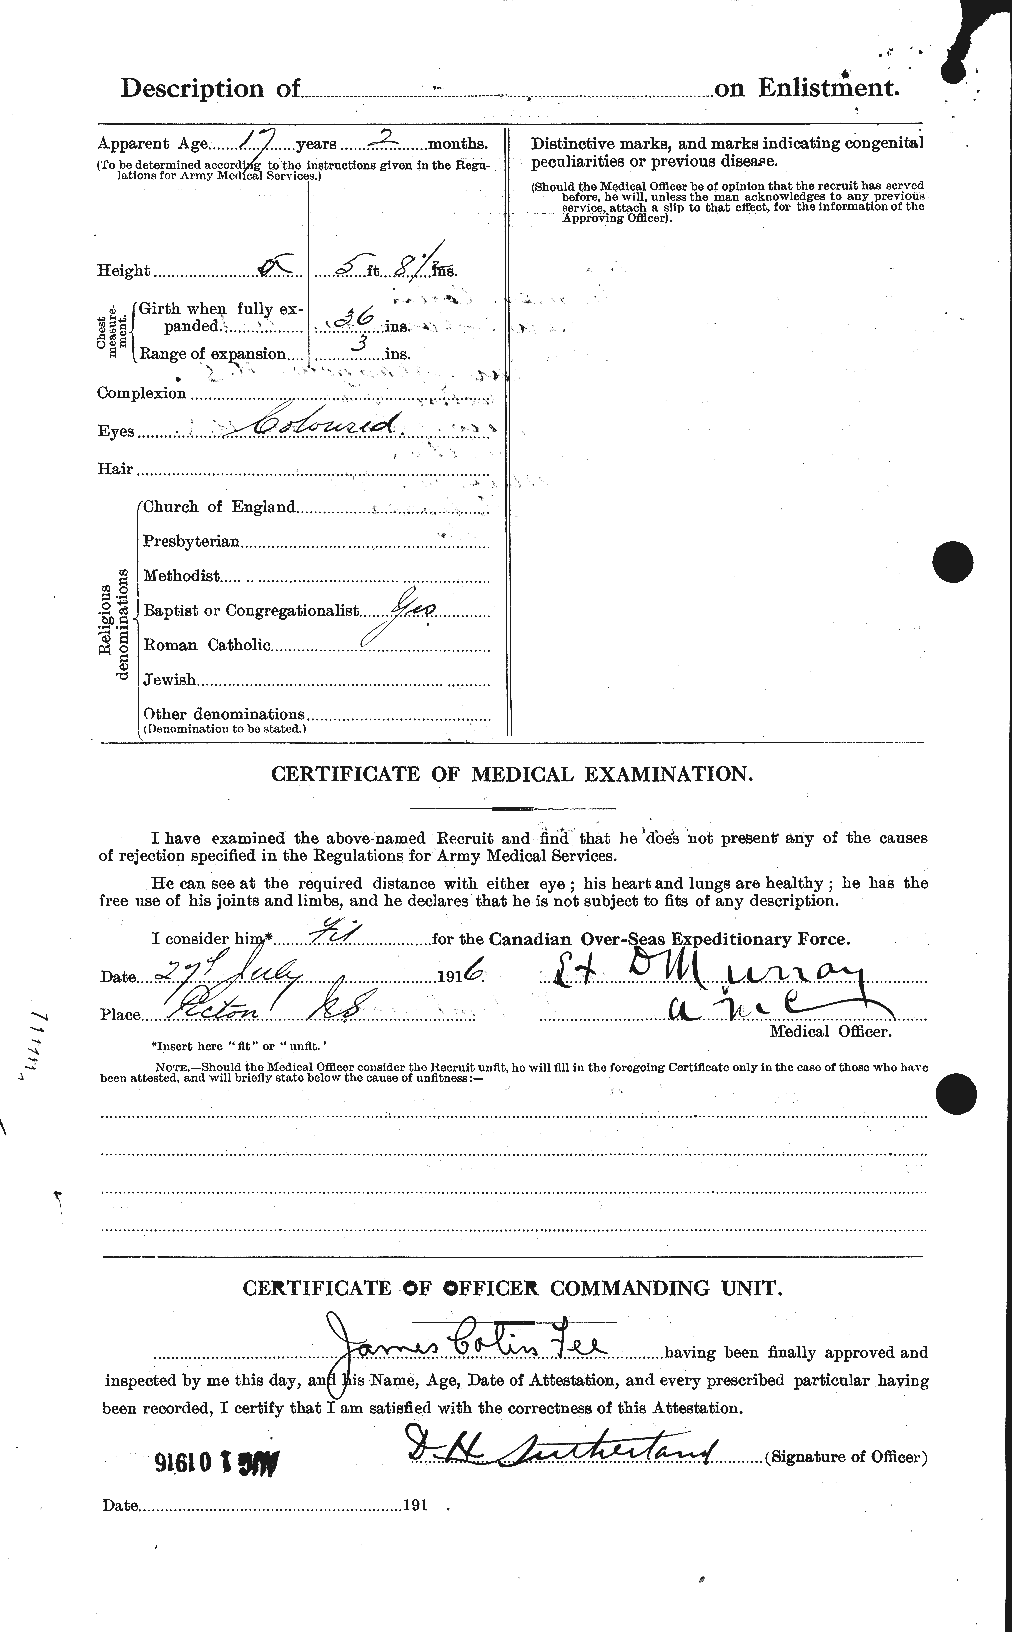 Dossiers du Personnel de la Première Guerre mondiale - CEC 321505b